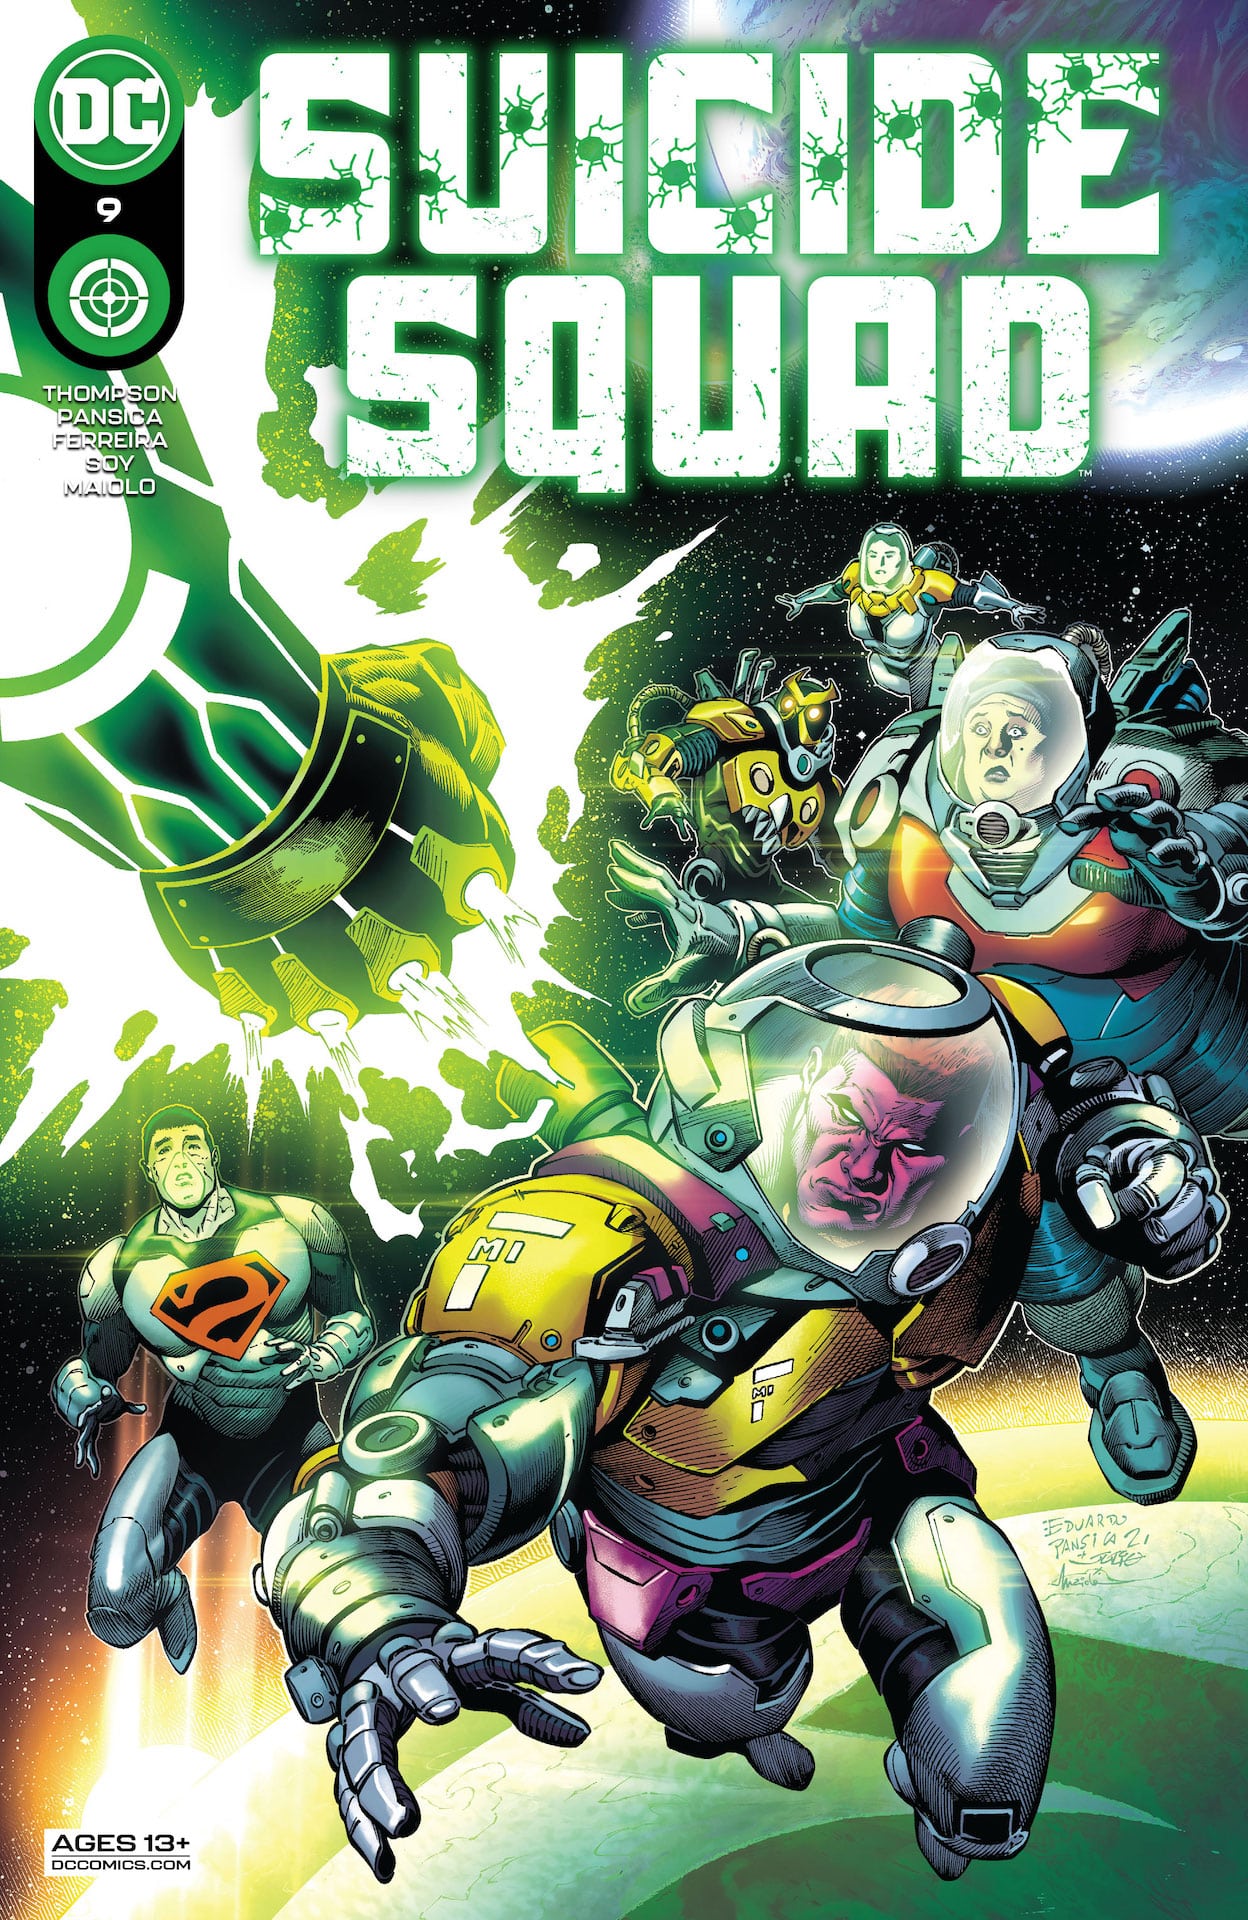 DC Preview: Suicide Squad #9